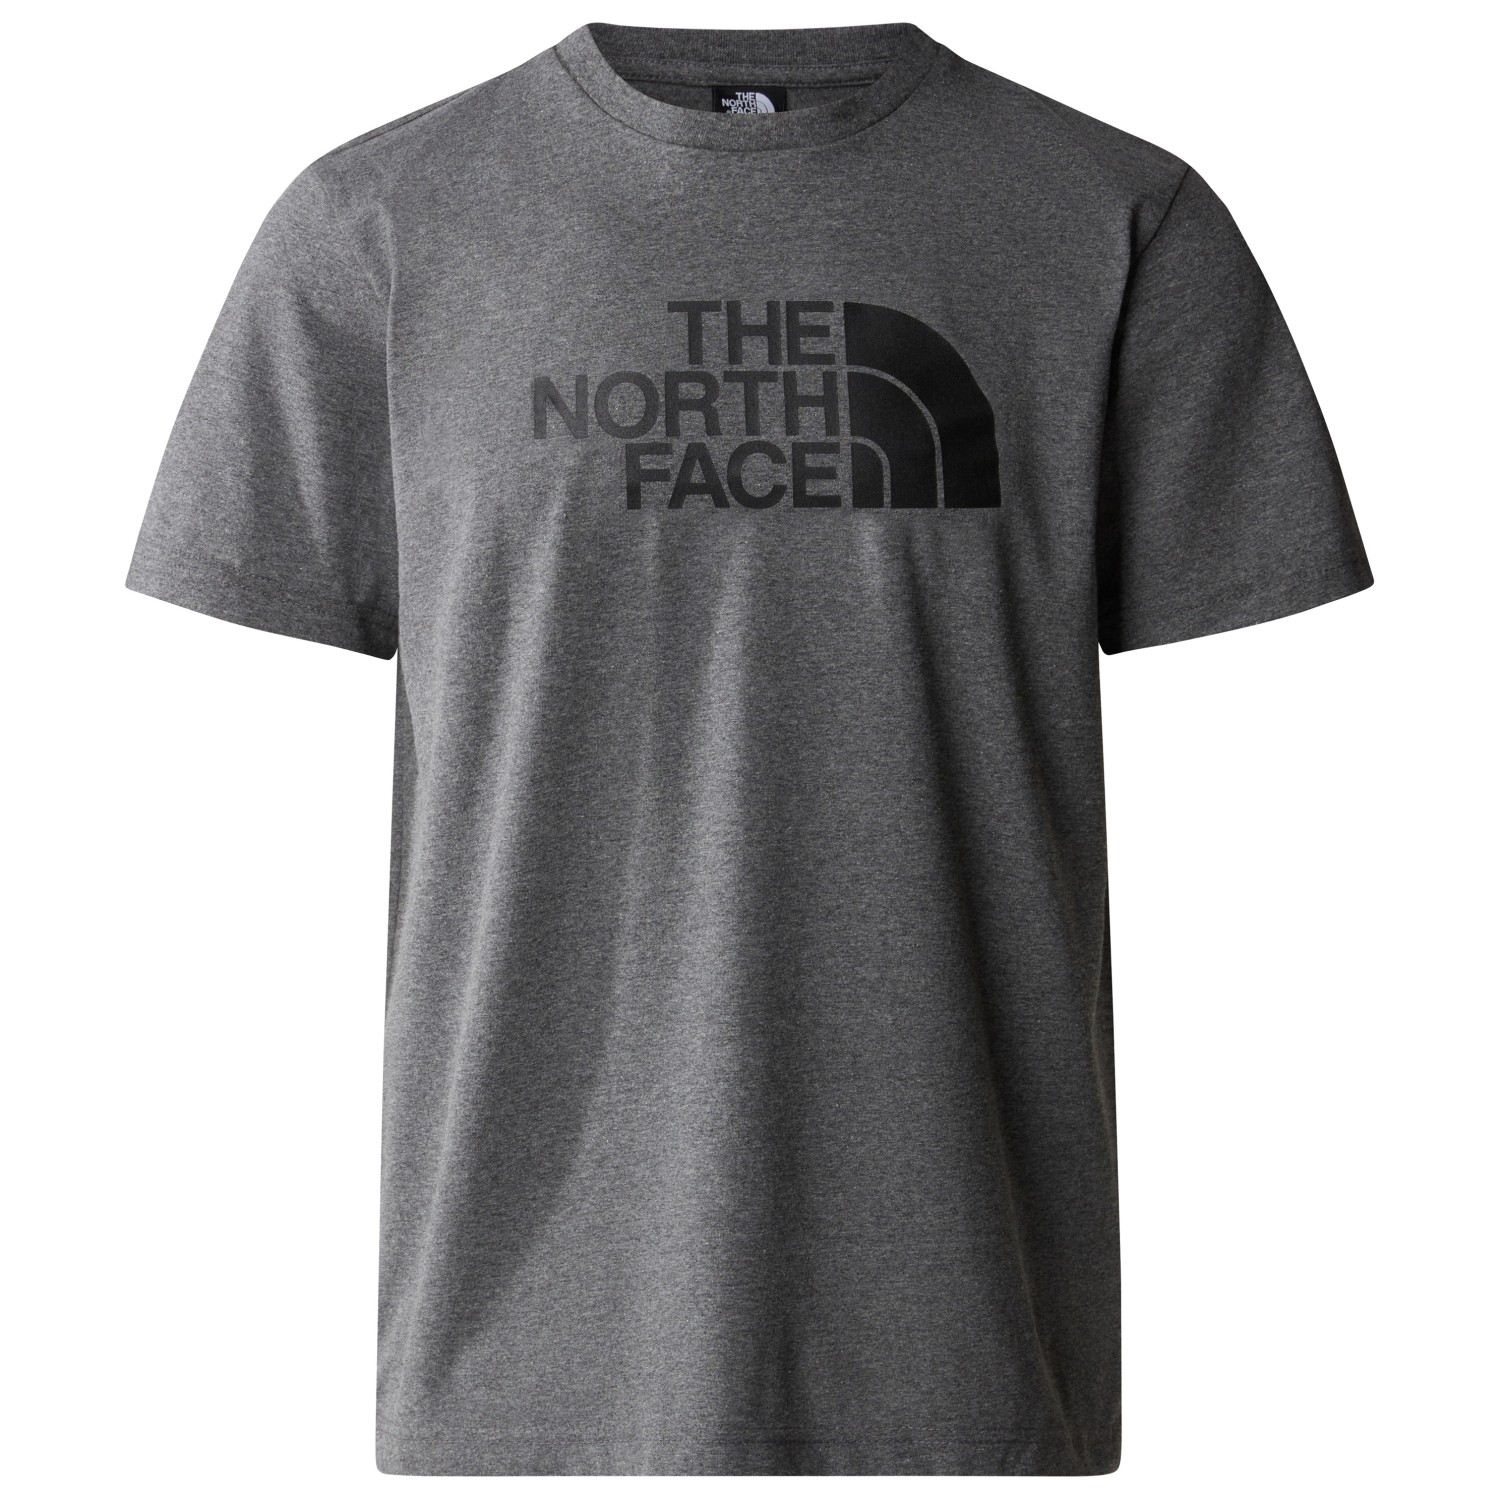 функциональная рубашка the north face women s flex circuit s s tee цвет tnf black Футболка The North Face S/S Easy Tee, цвет TNF Medium Grey Heather